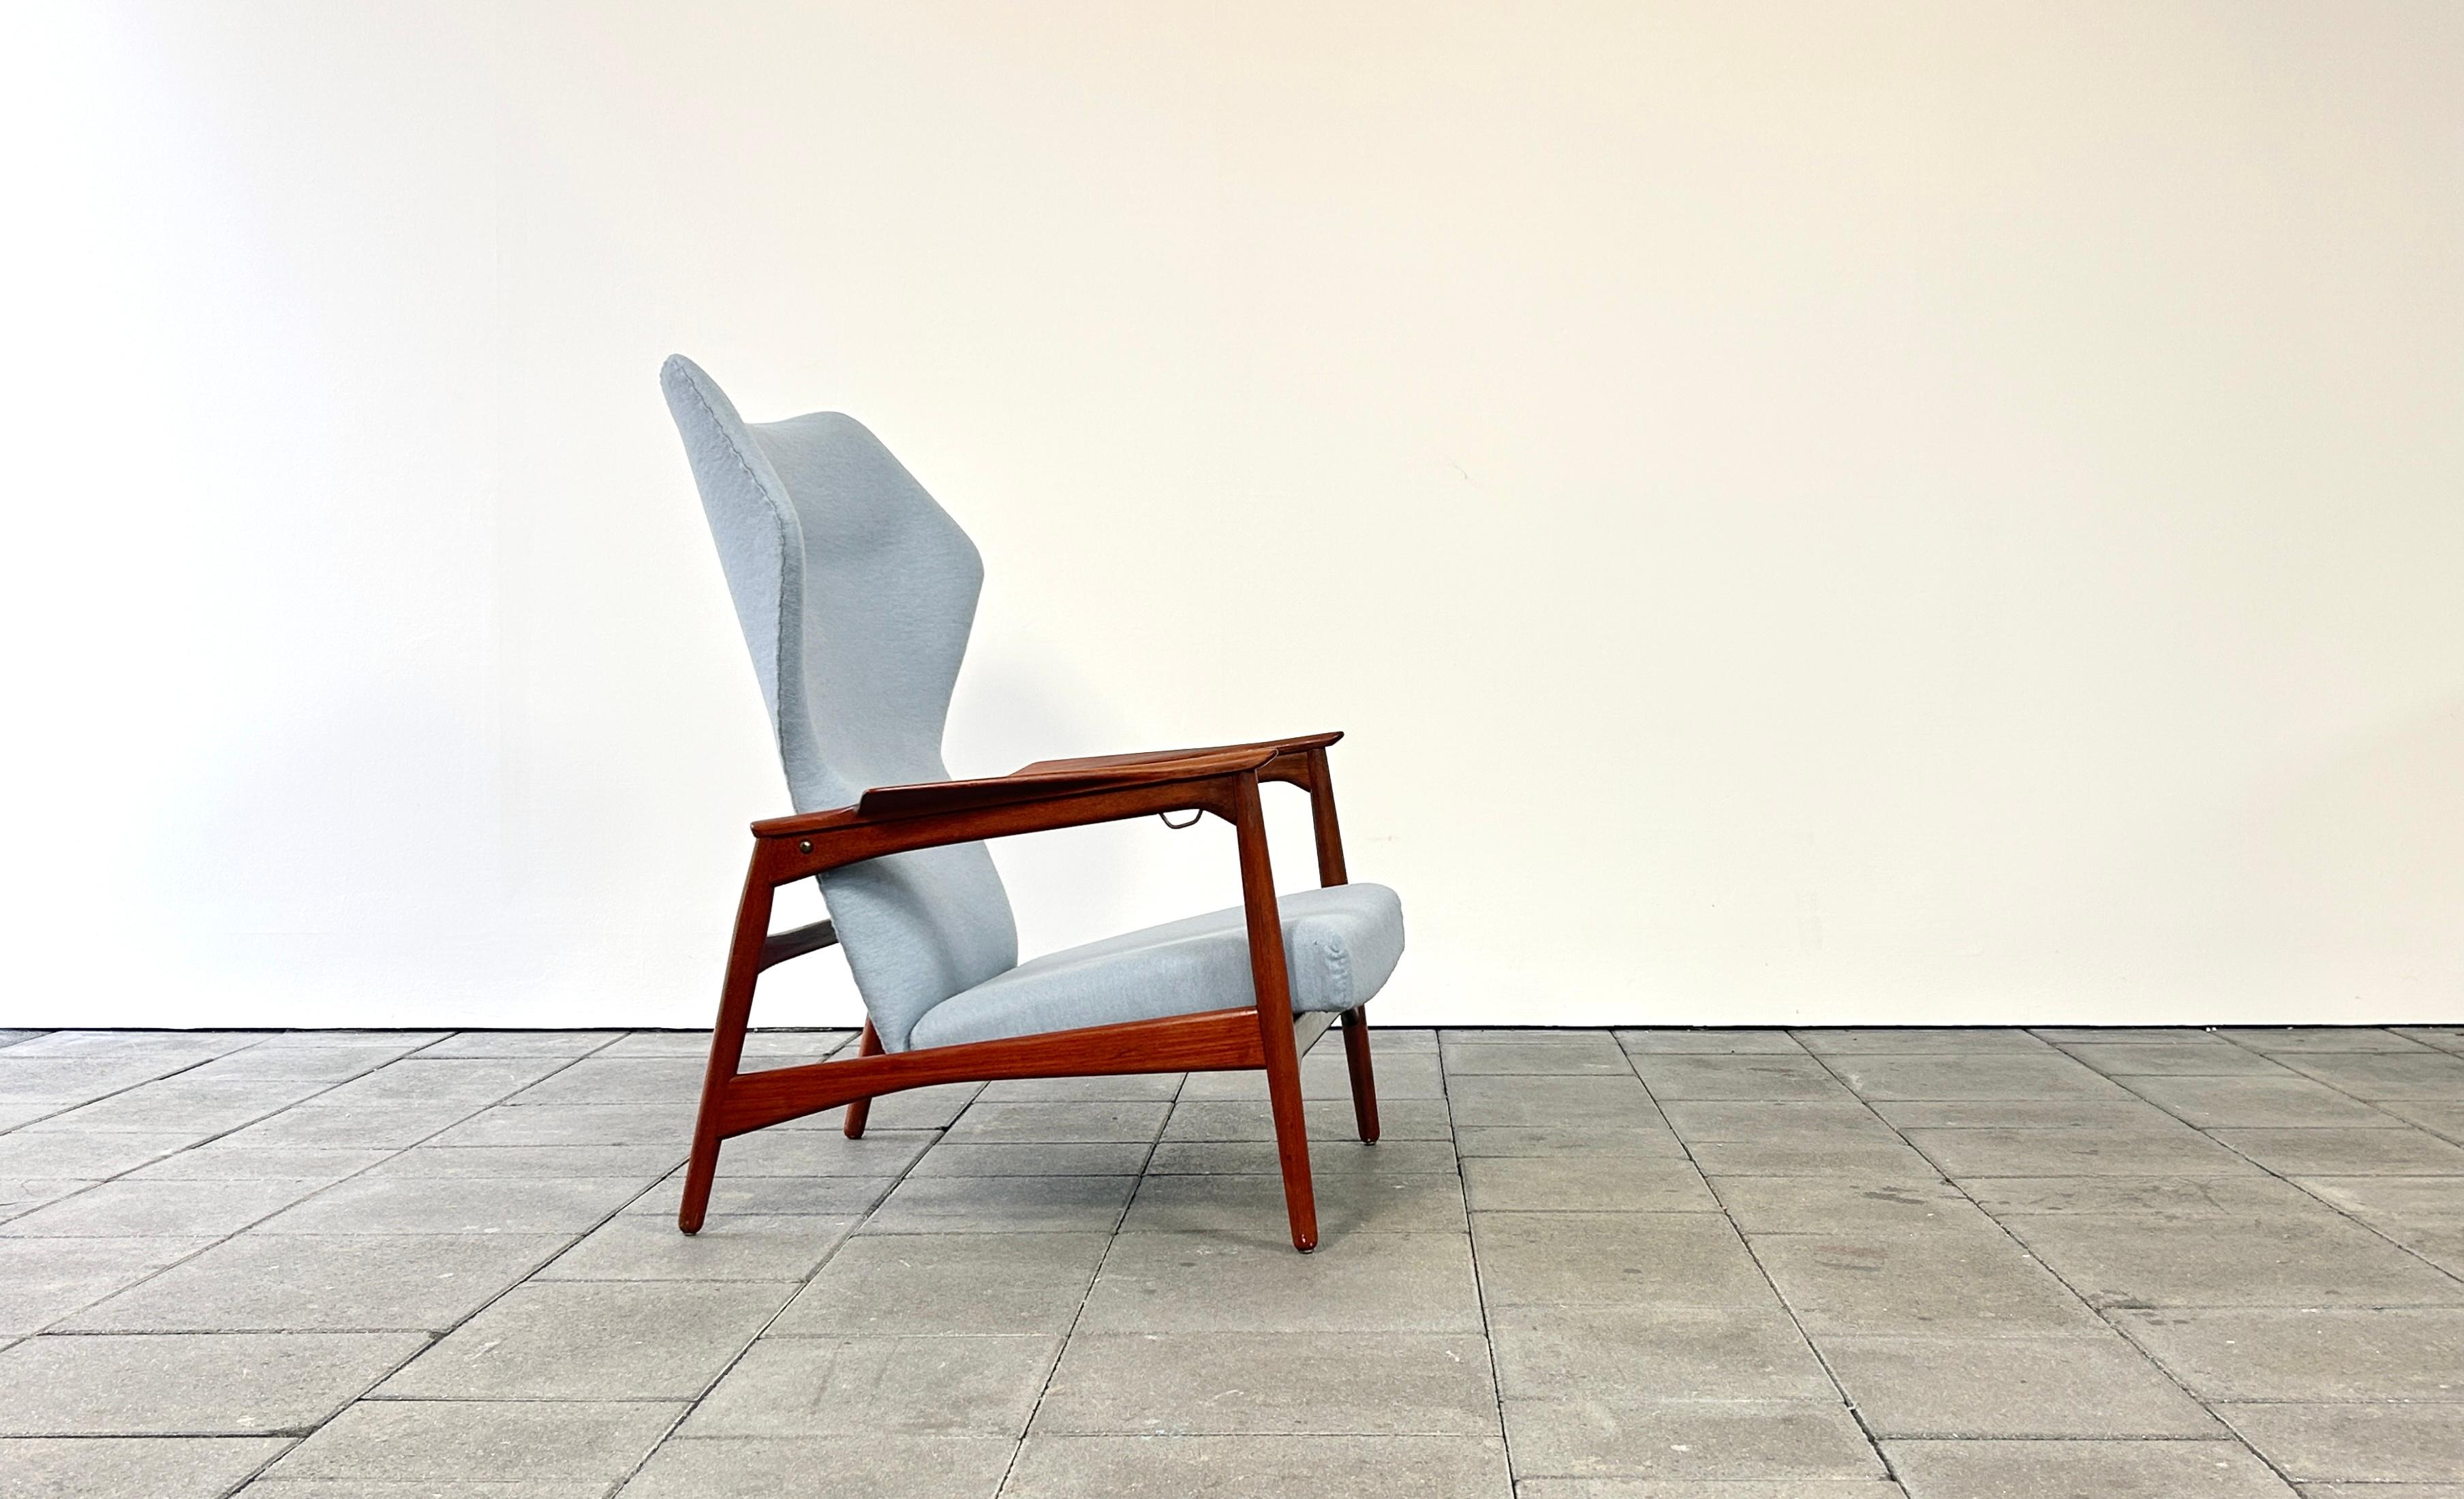 Chaise longue à dossier ailé Carlo, conçue par Ib Kofod Larsen en 1954, pour Carlo Gahrn. Au Danemark. Cette édition a été produite sous licence par Gelderland, aux Pays-Bas, dans les années 1960.

La caractéristique de la chaise longue Carlo est